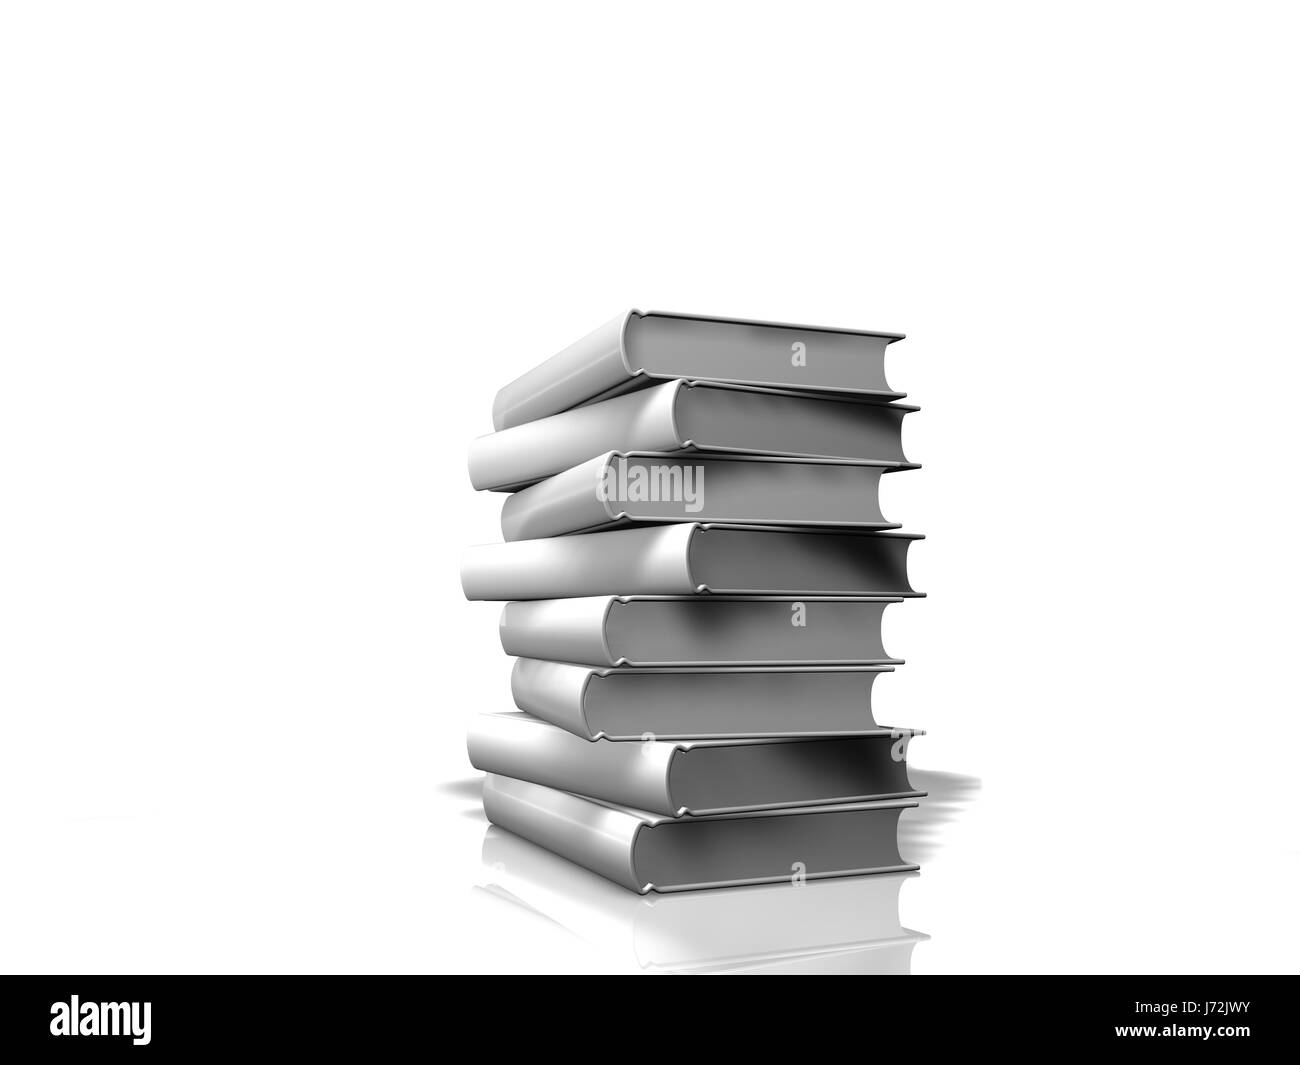 Les livres de l'éducation bibliothèque pile pile tas blanc livre éducation étude Banque D'Images